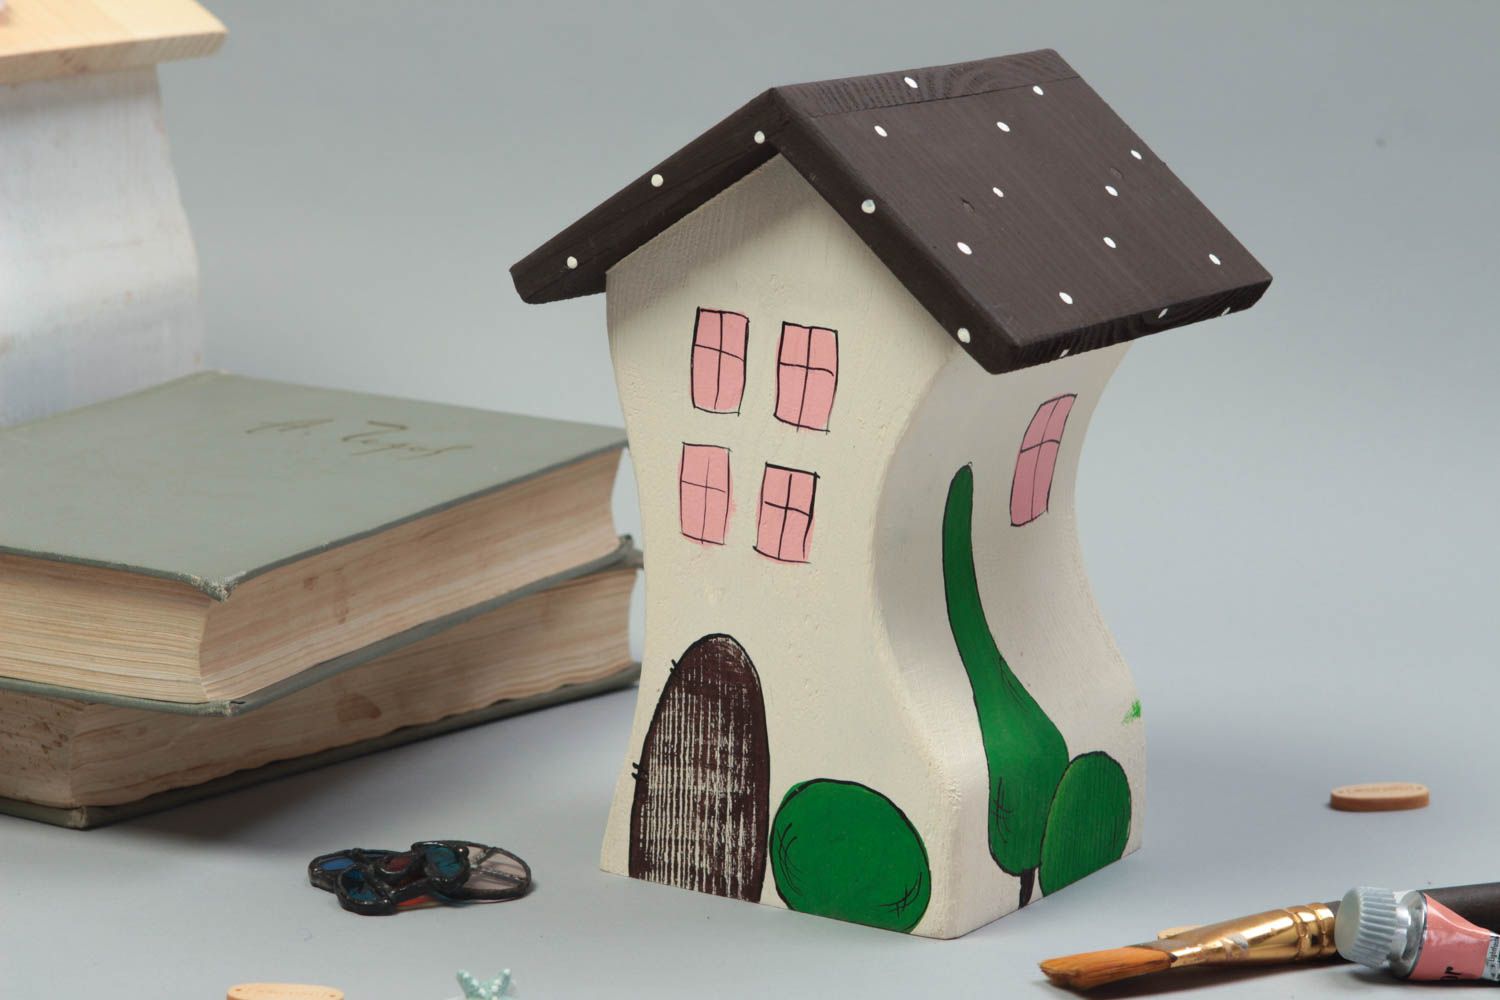 Фигурный домик для декора дома ручной работы расписанный красками из дерева фото 1